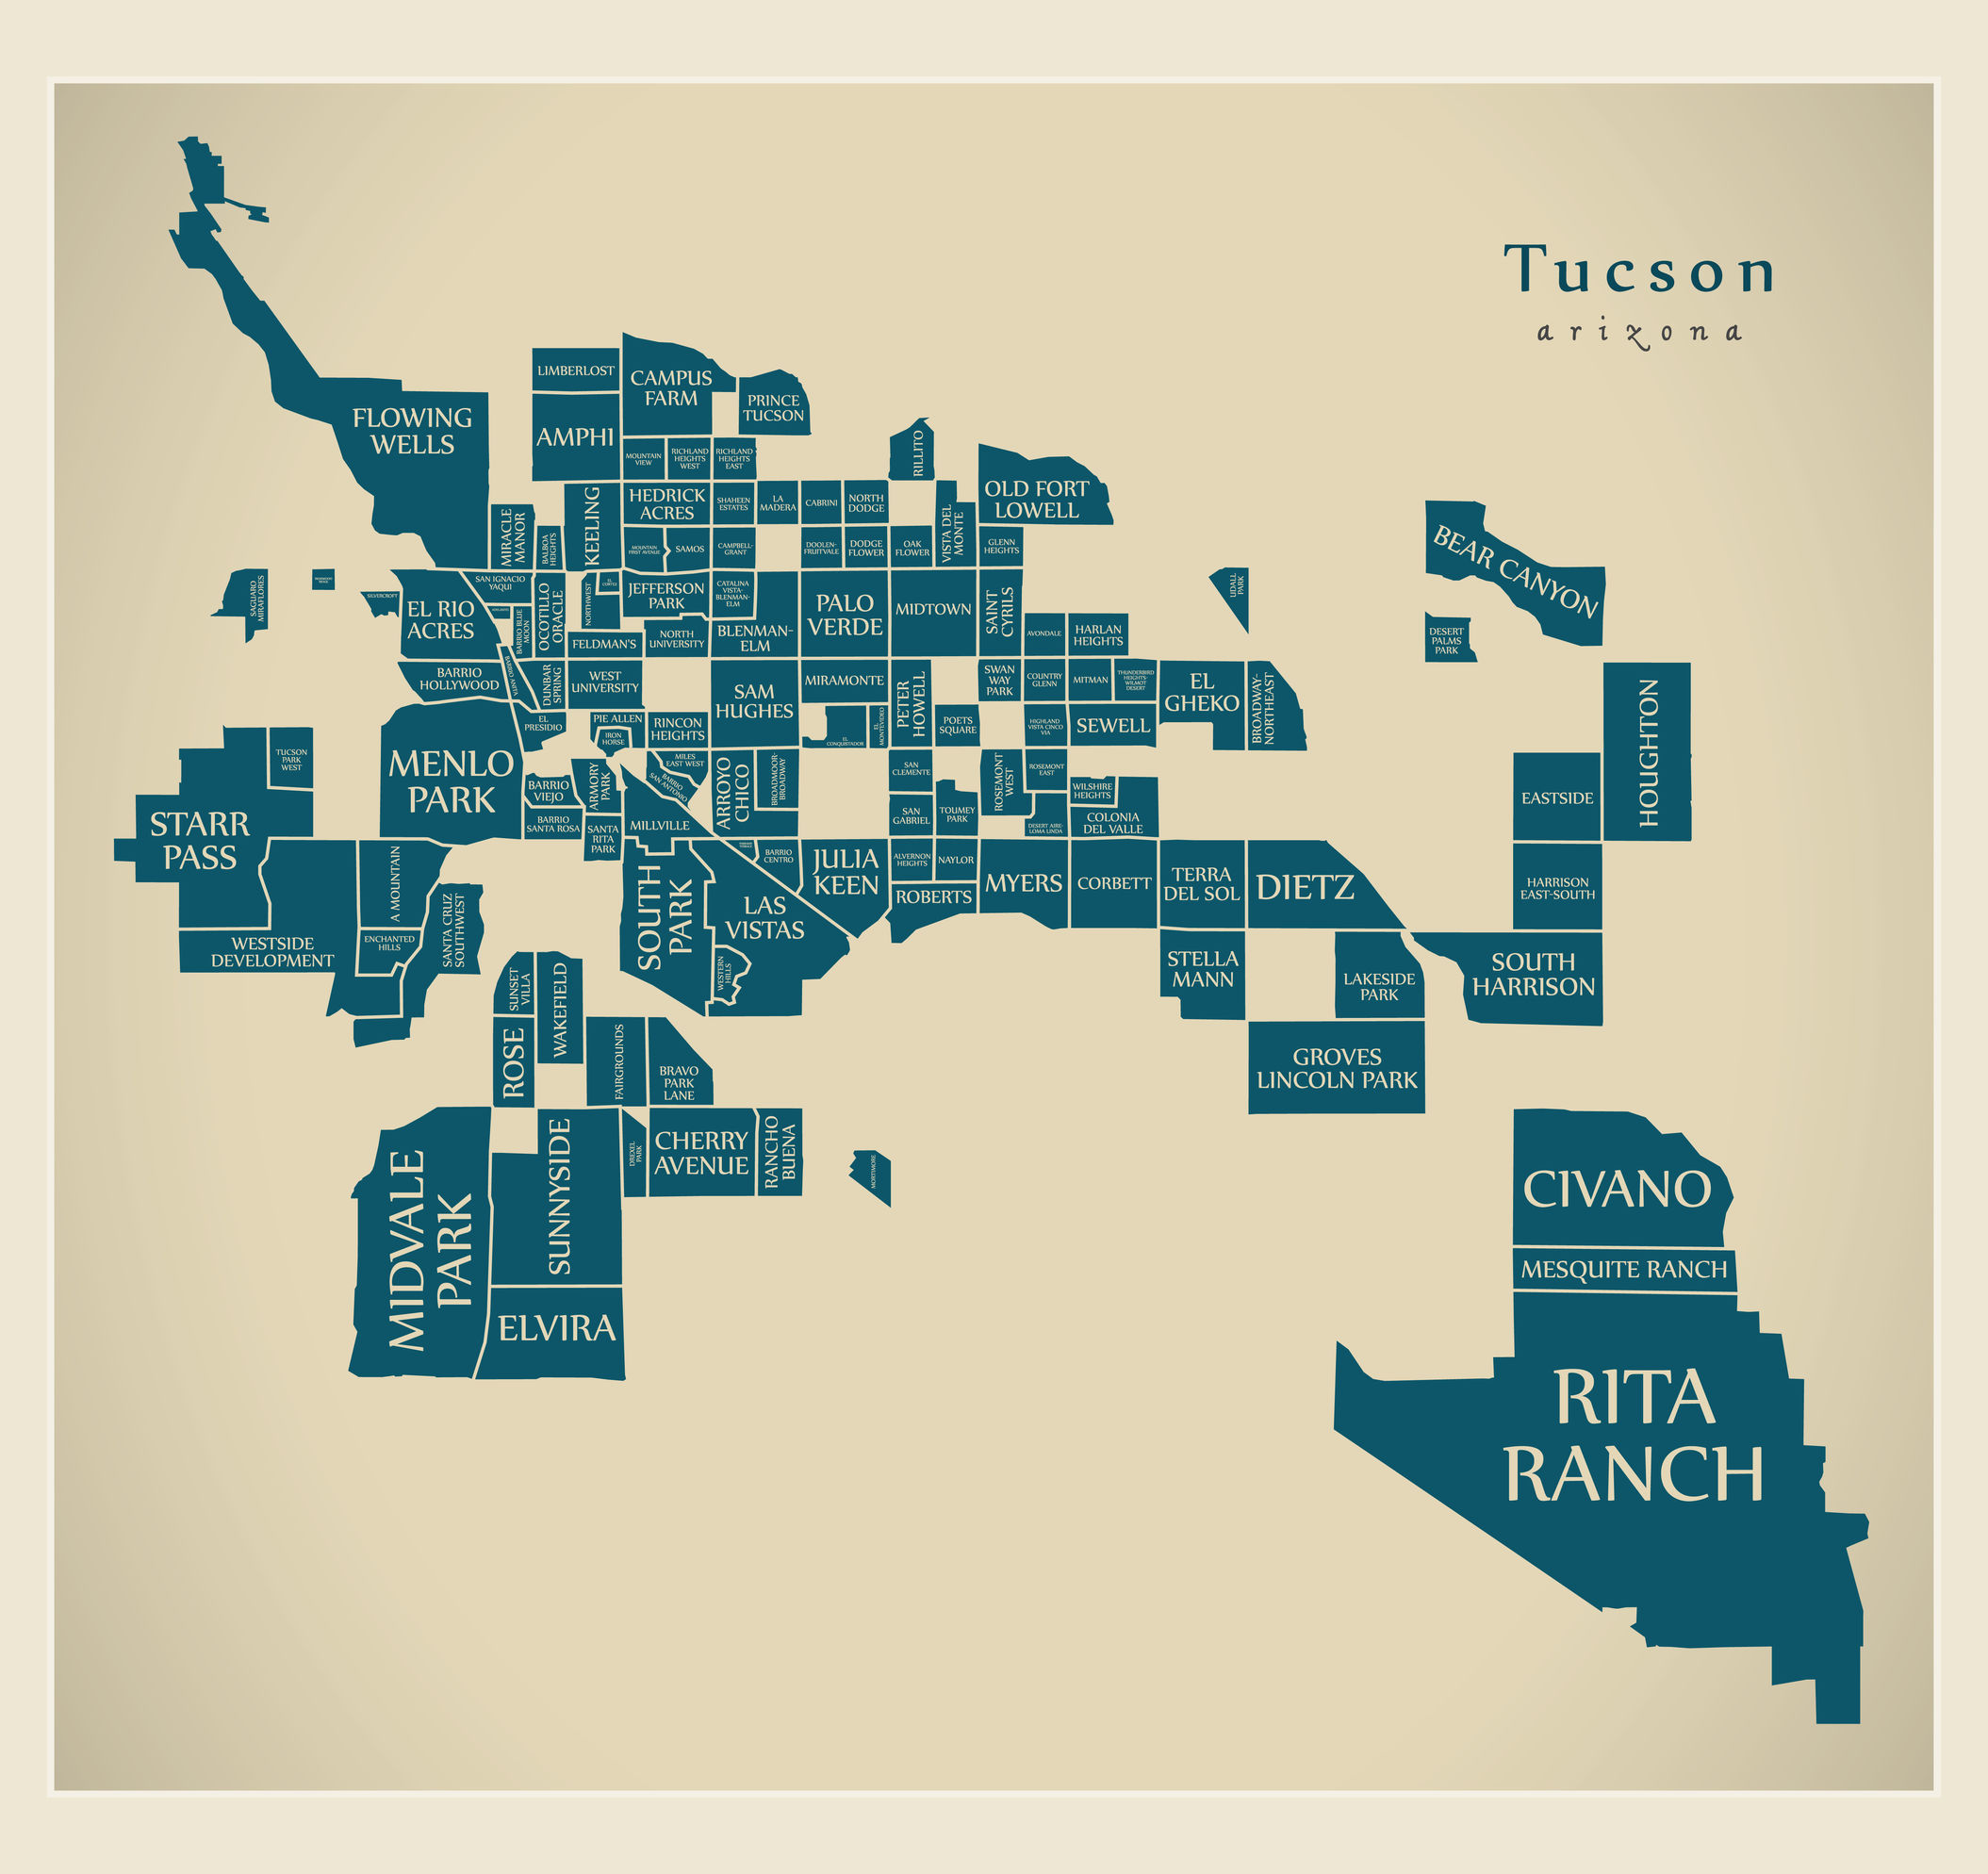 Tucson Arizona neighborhoods map